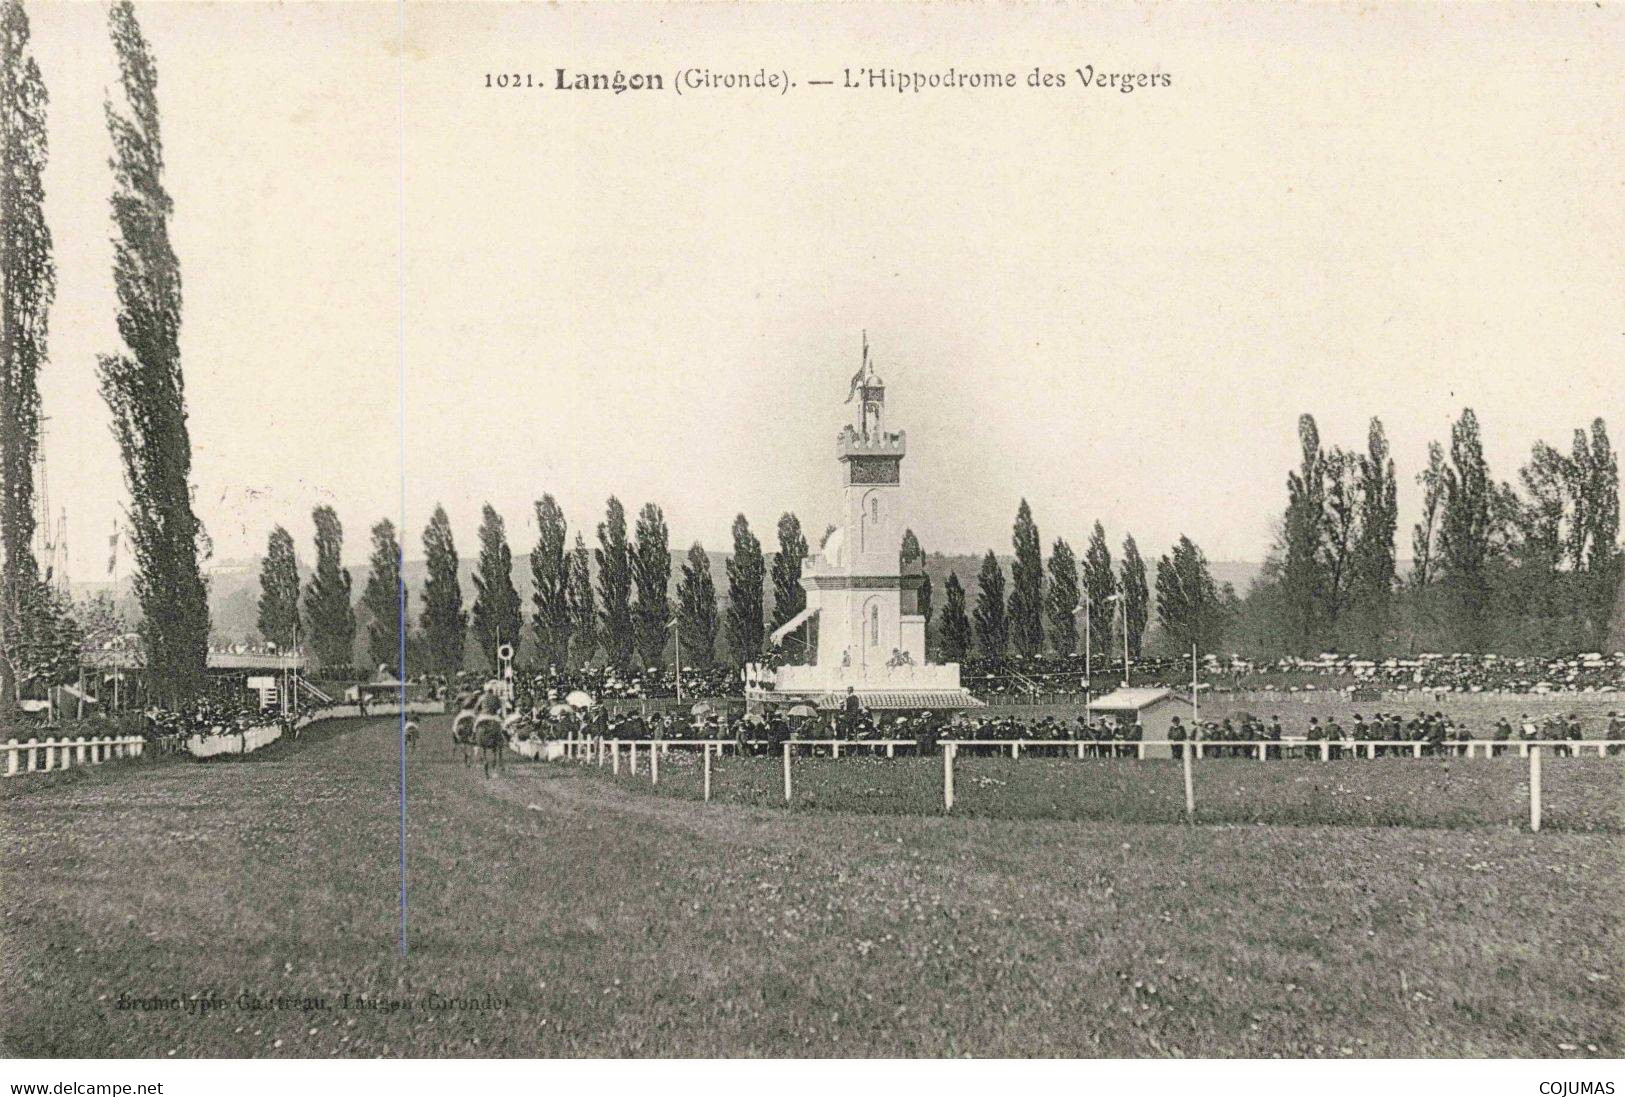 33 - LANGON - S02828 - L'Hippodrome Des Vergers - Chevaux De Course - L1 - Langon